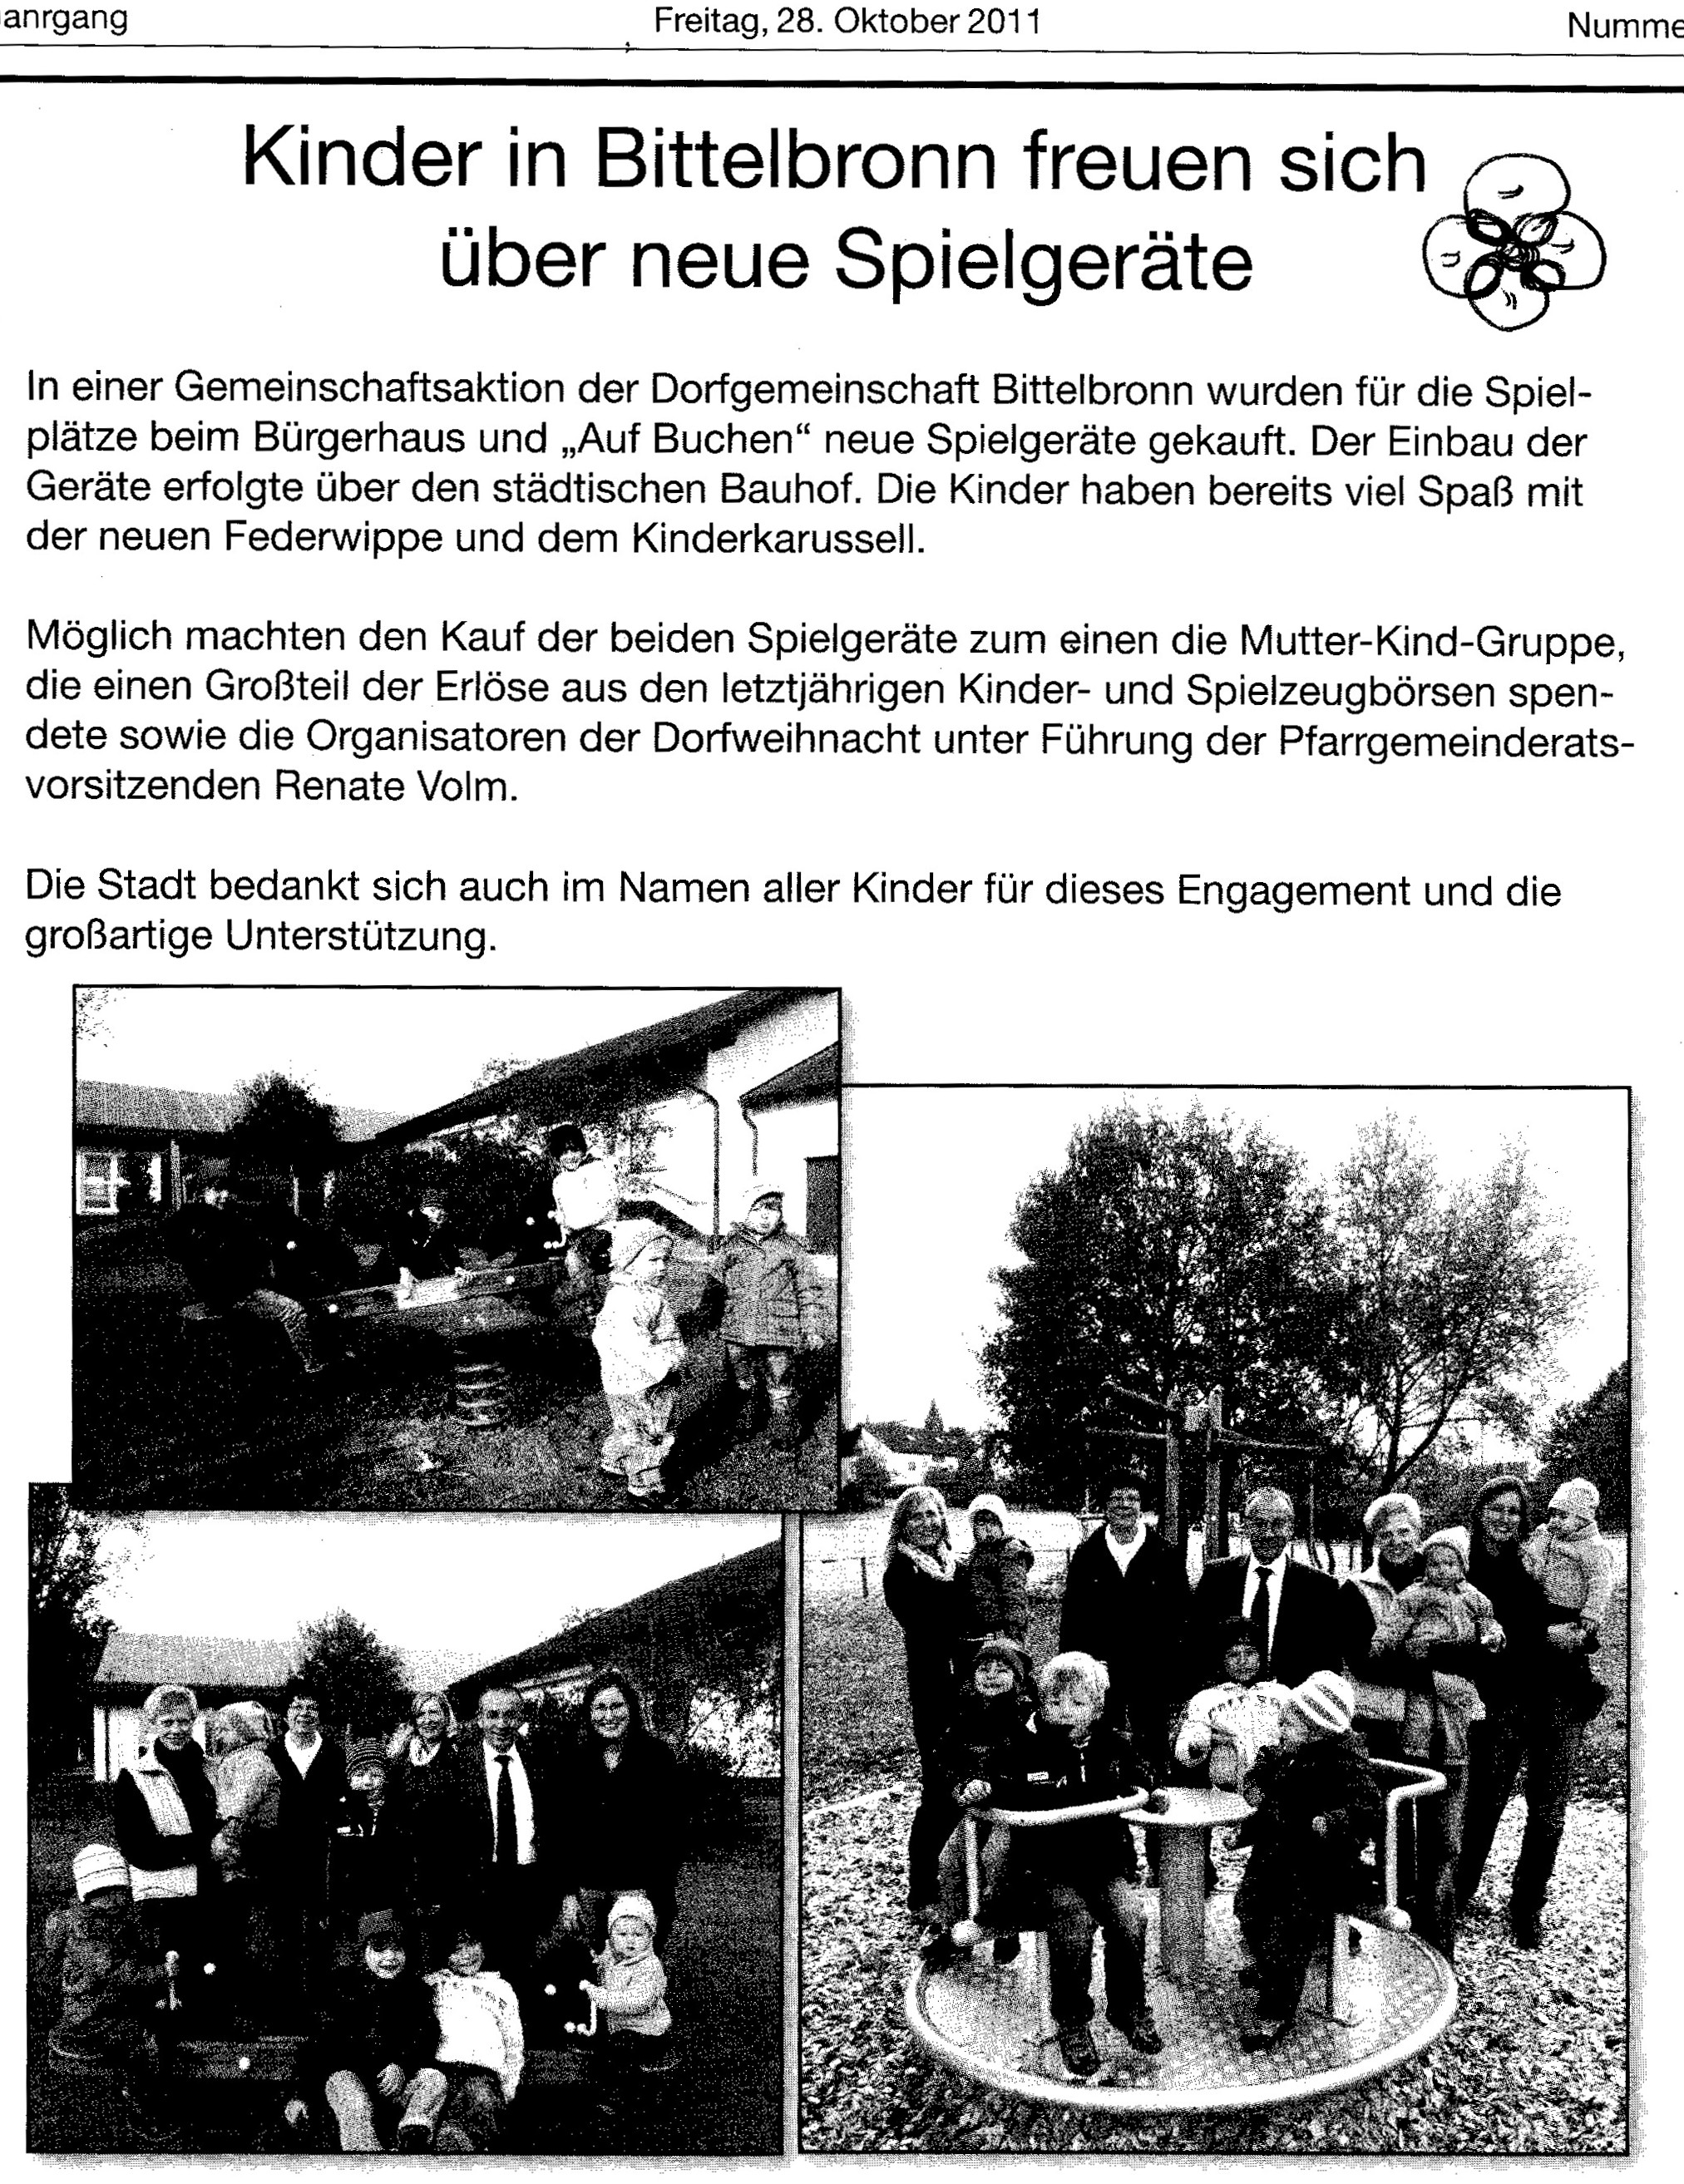 Nachrichtenblatt-10-2011